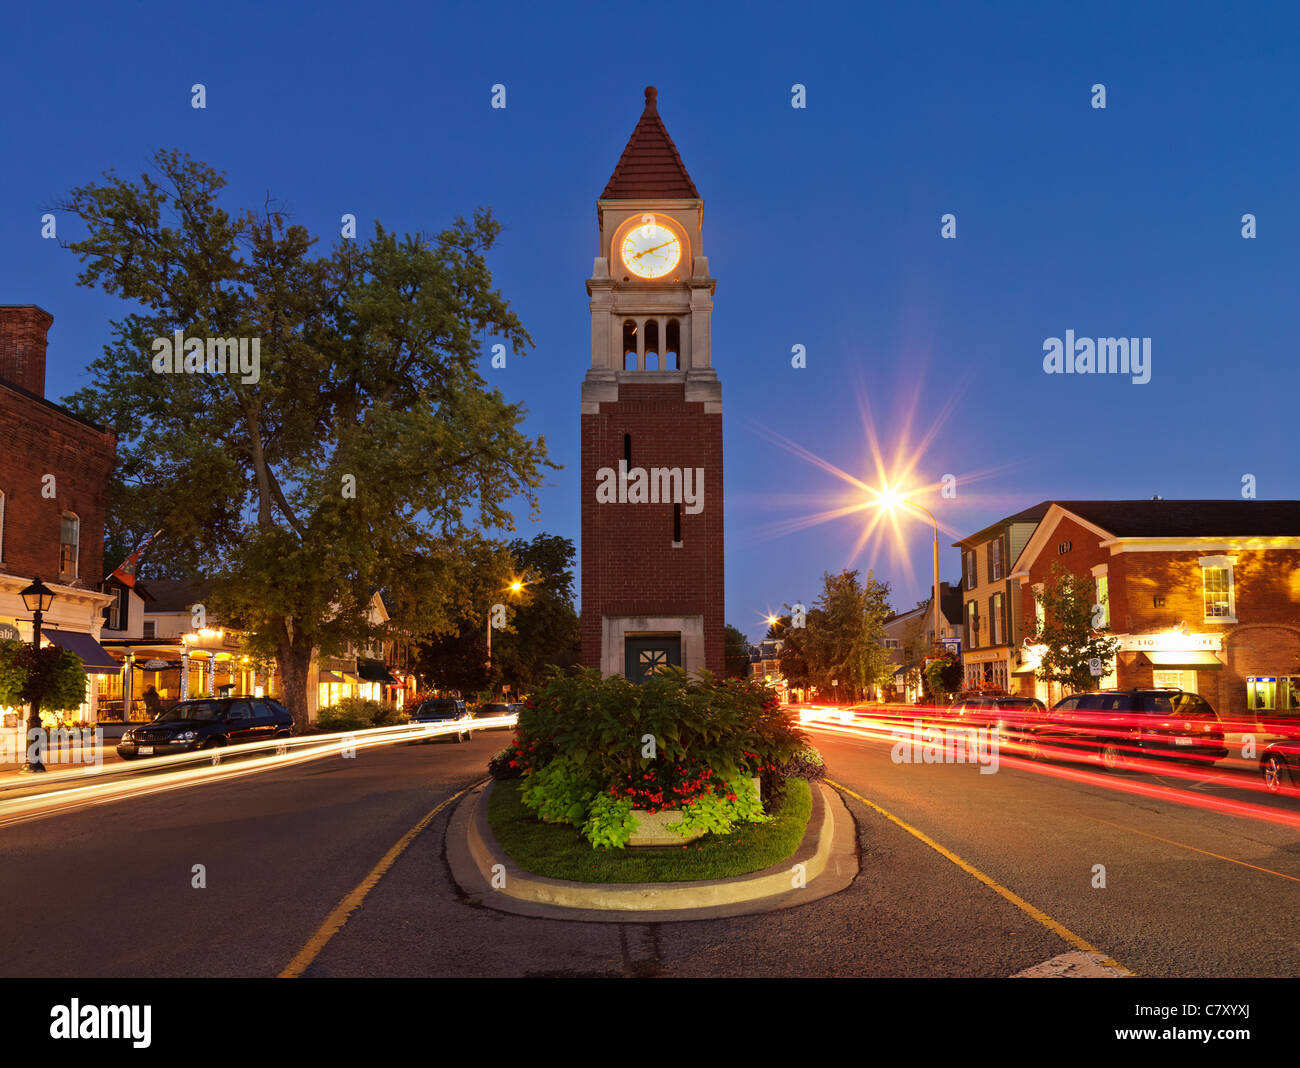 Kanada, Ontario, Niagara-on-the-Lake, der Clock Tower (Kenotaph) auf der Queen Street in der Abenddämmerung Stockfoto